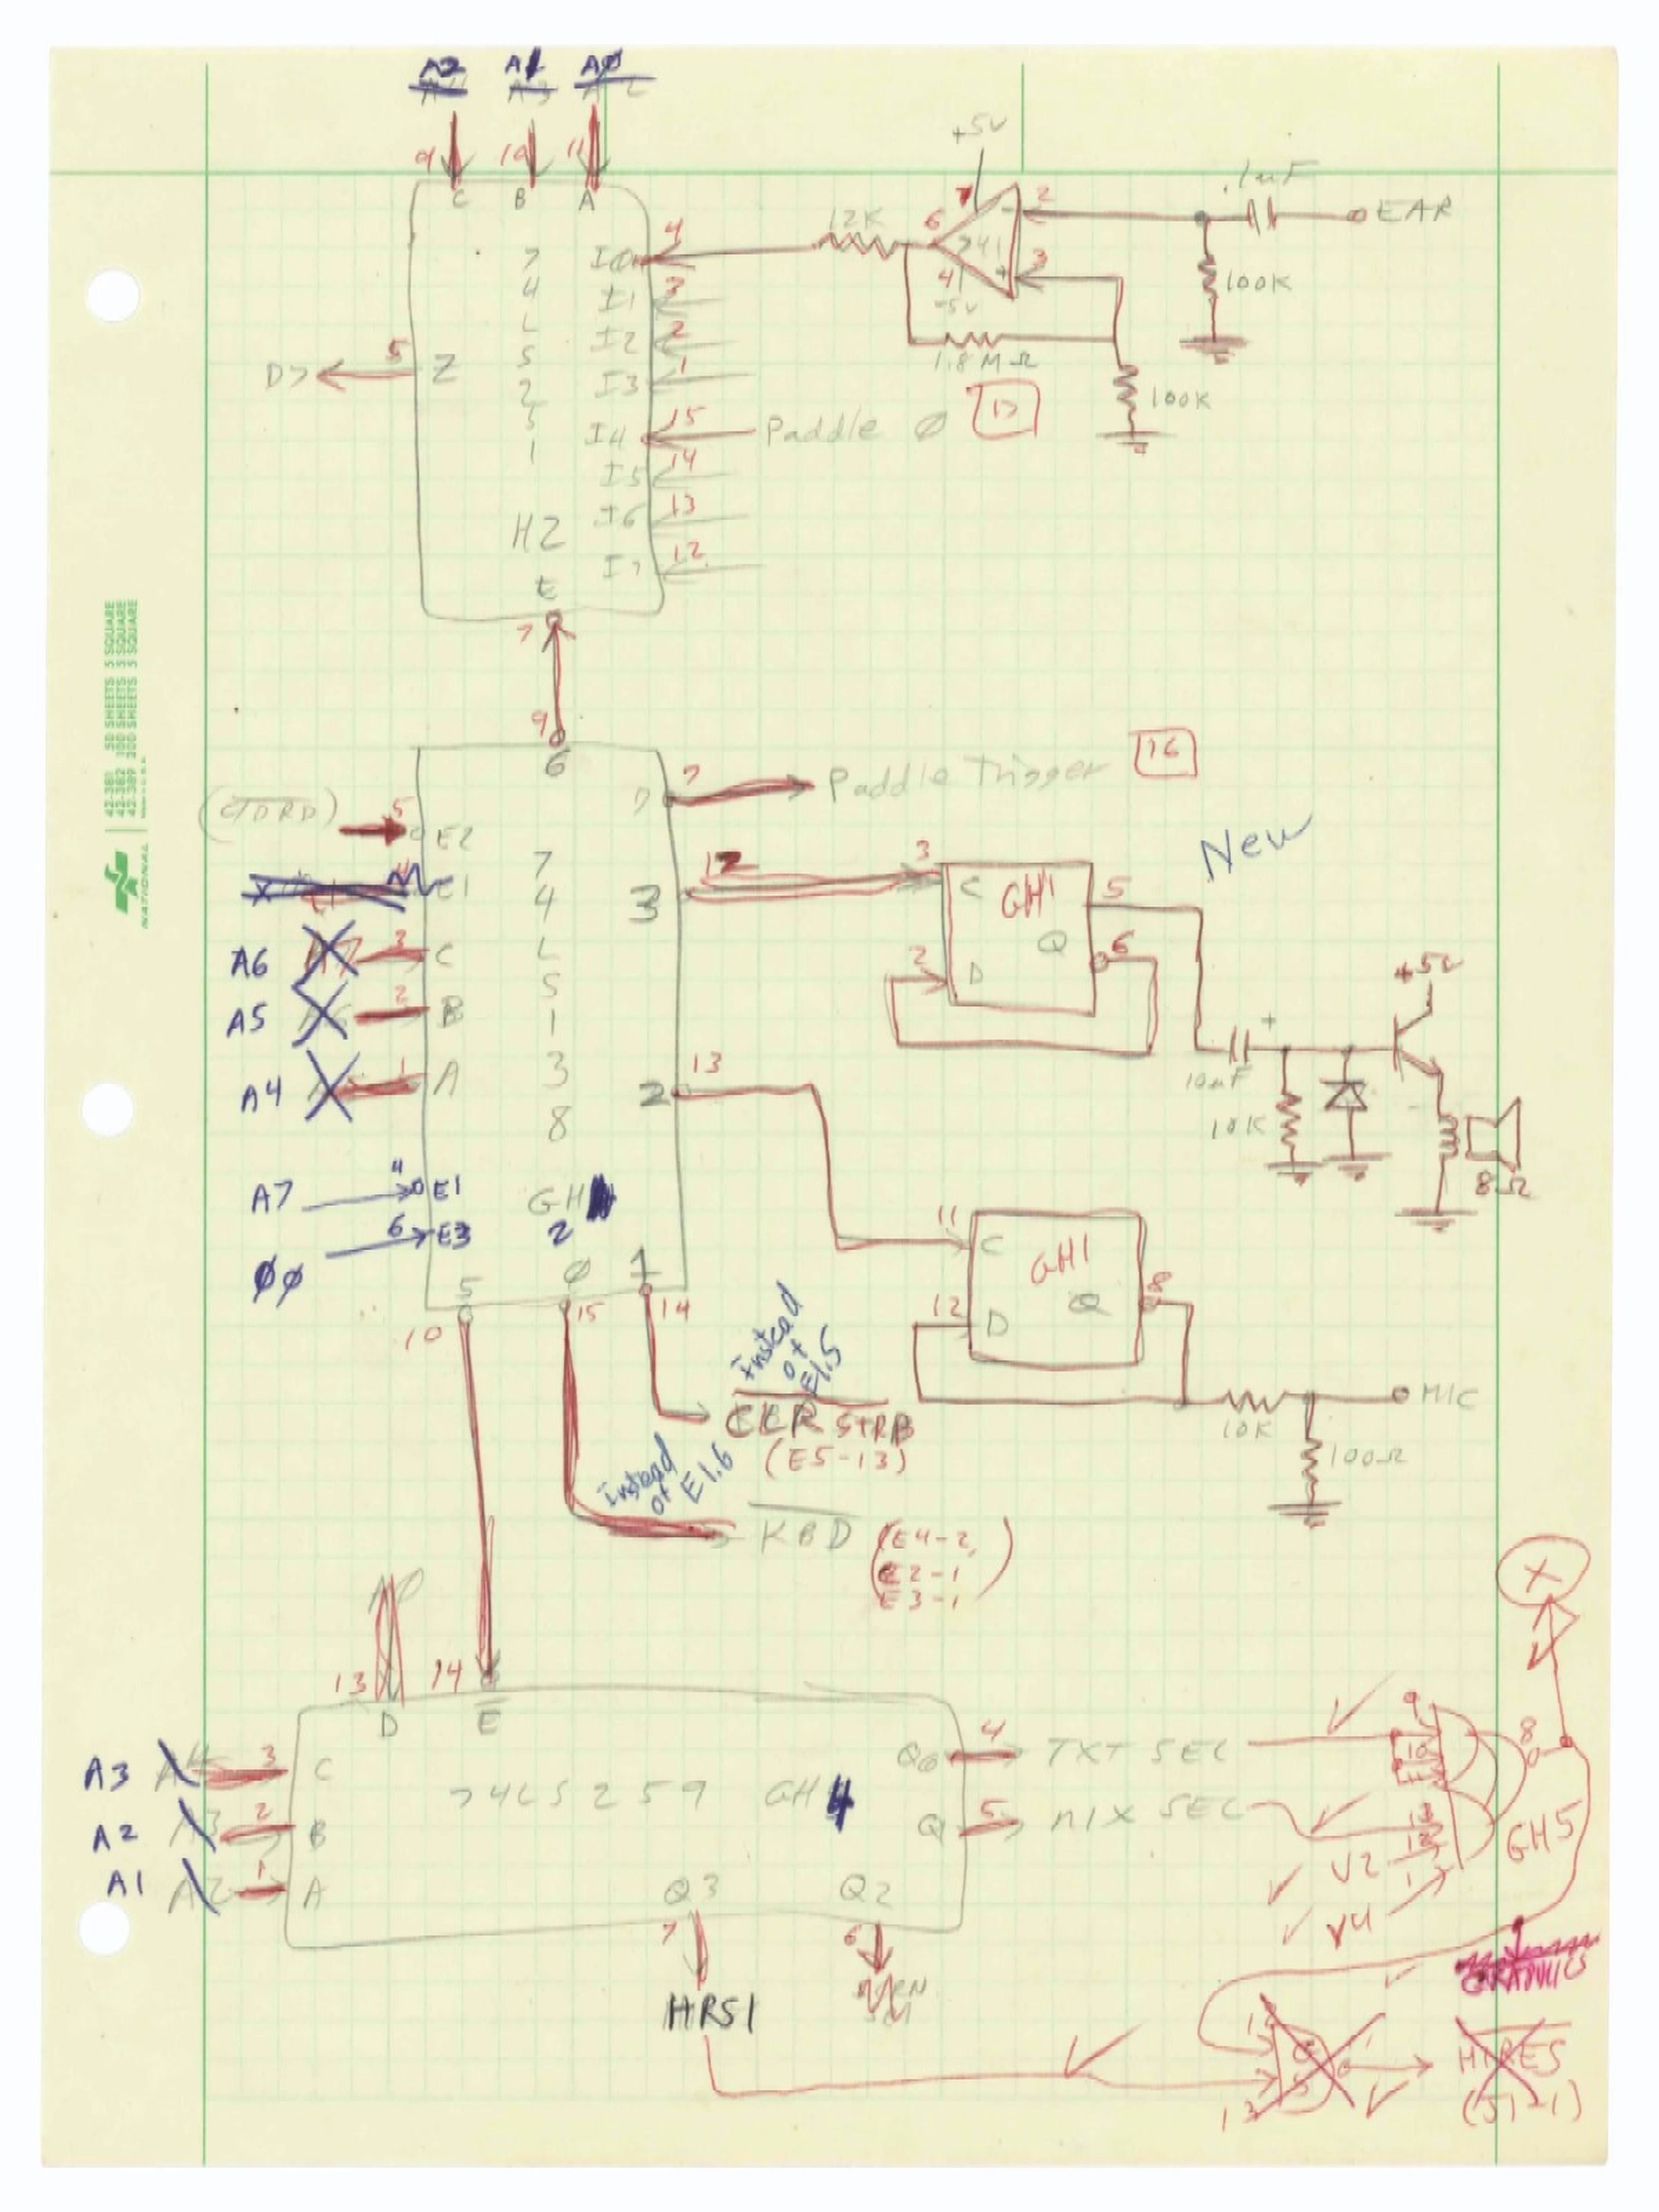 Apuntes originales del Apple II escritos por Steve Wozniak